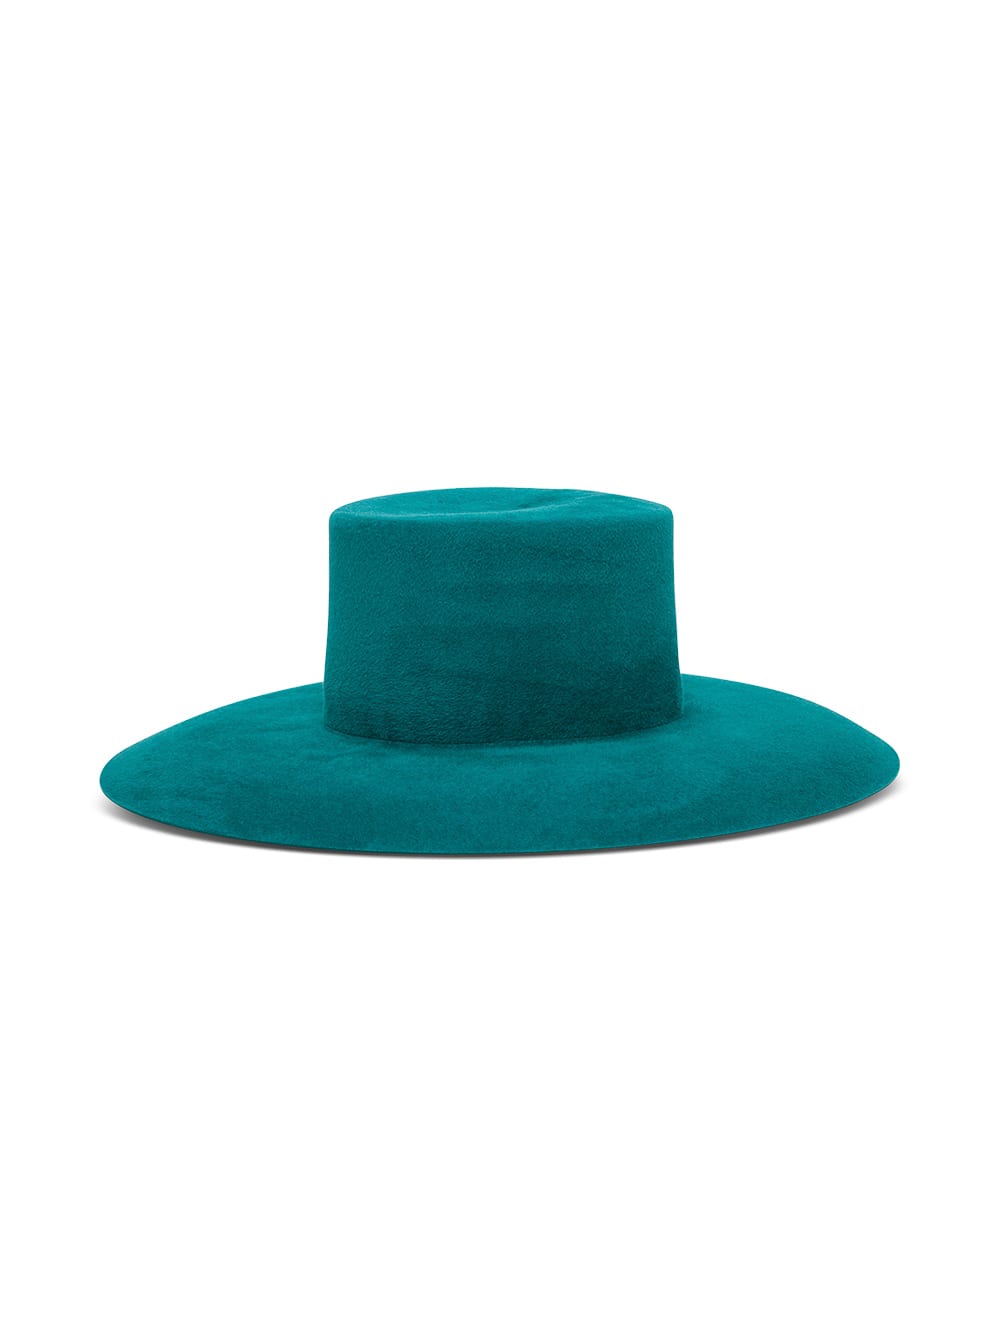 Alberta Ferretti Wide Brim Hat In Petroleum Colored Suede Leather